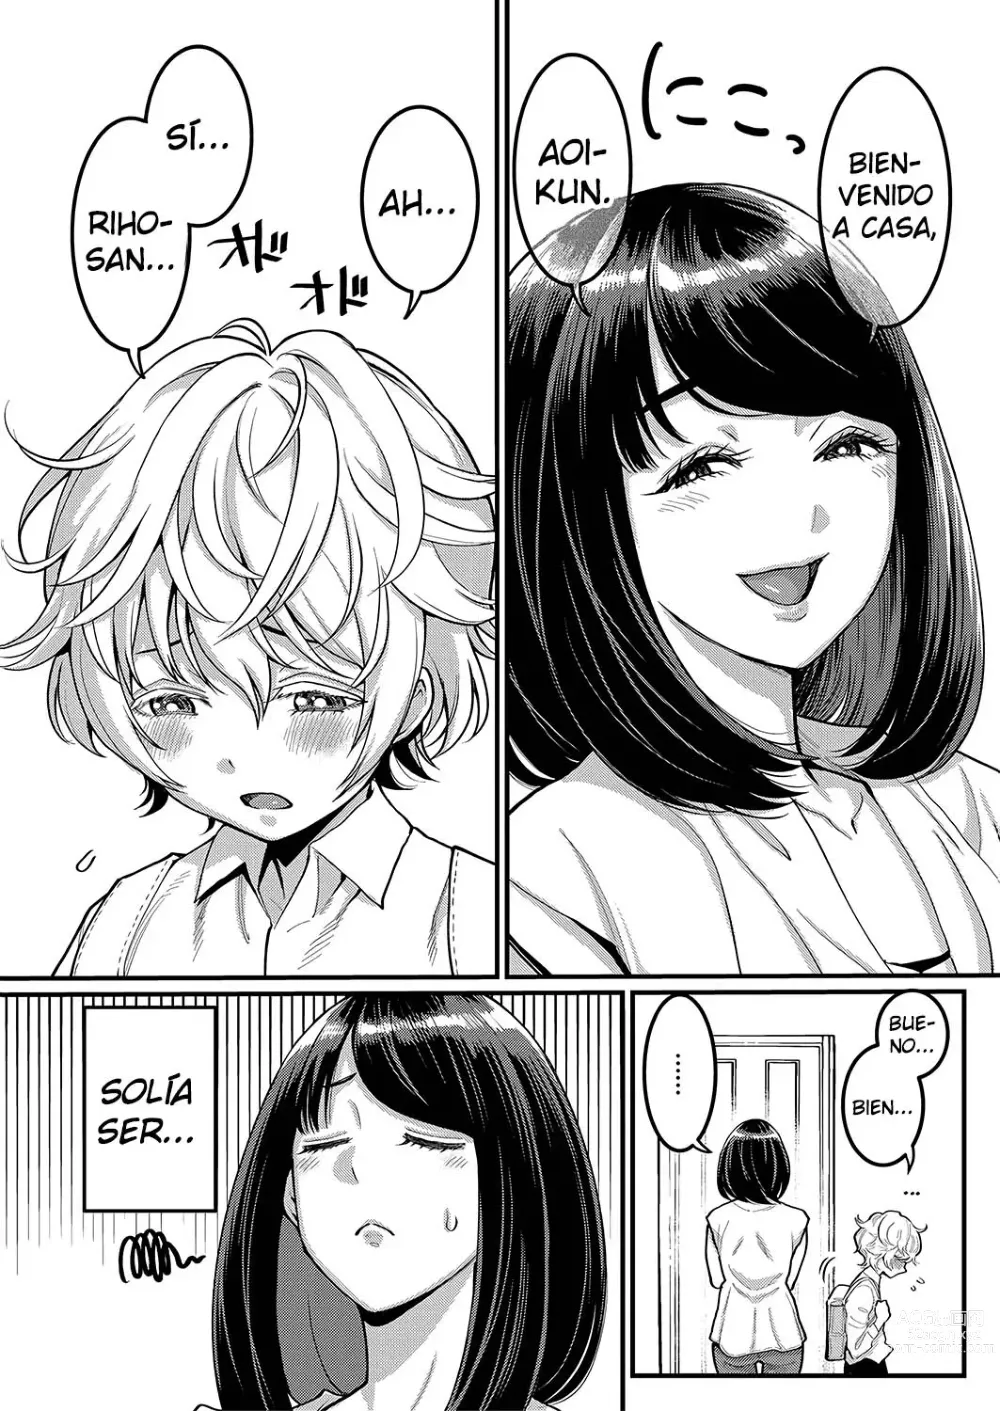 Page 6 of manga Quiero ser tu madre